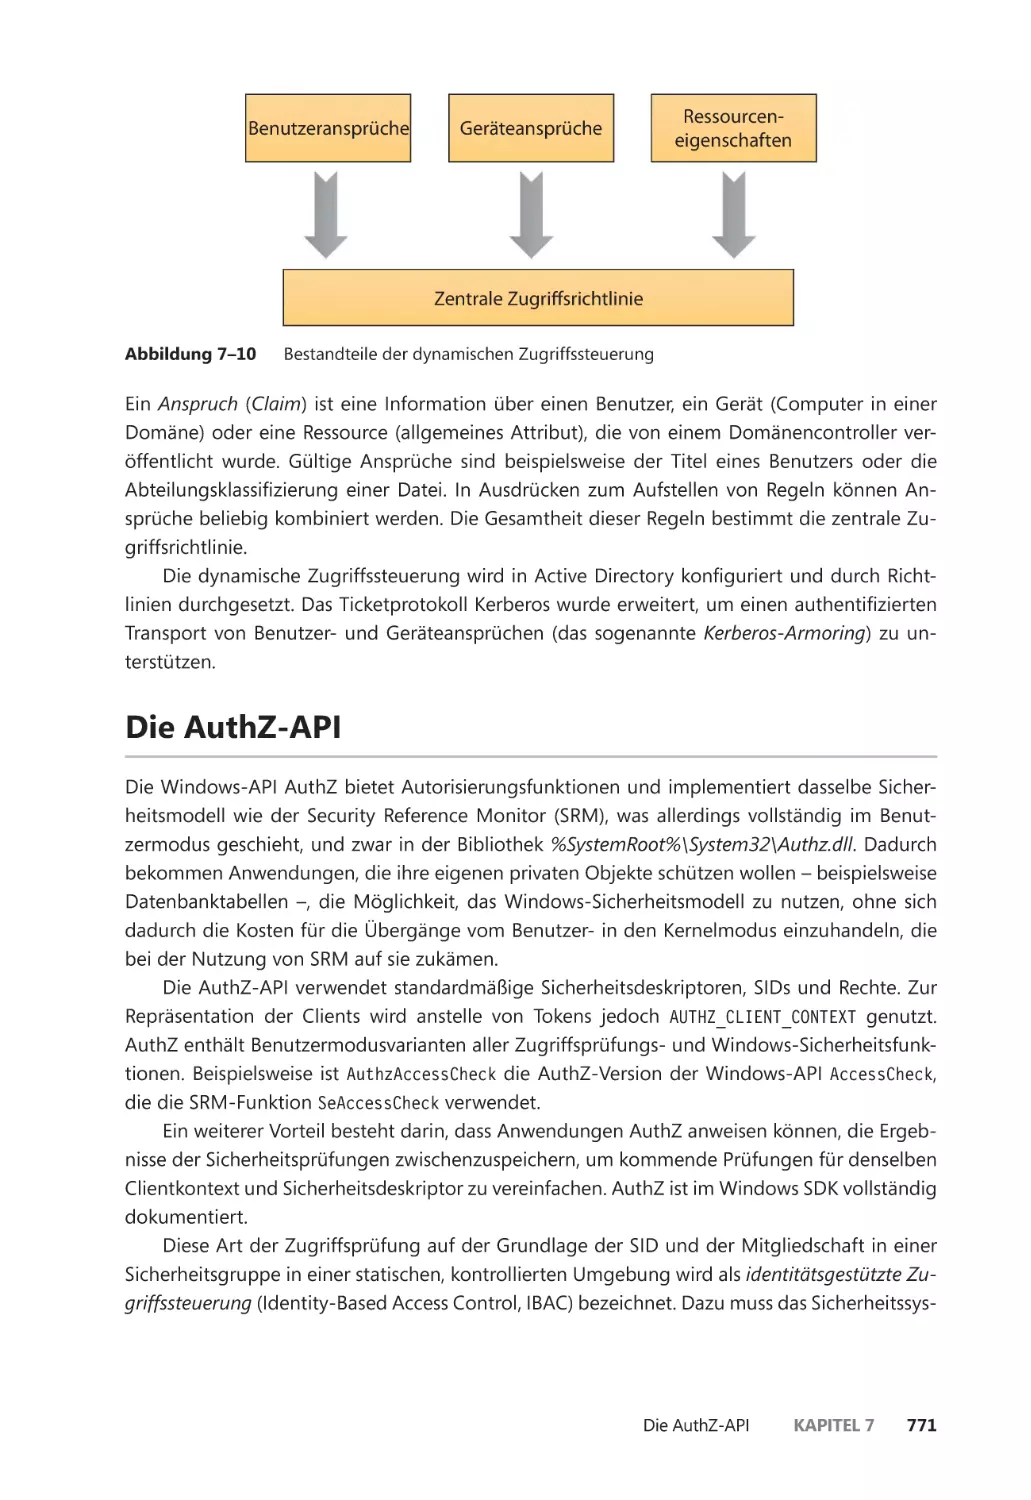 Die AuthZ-API